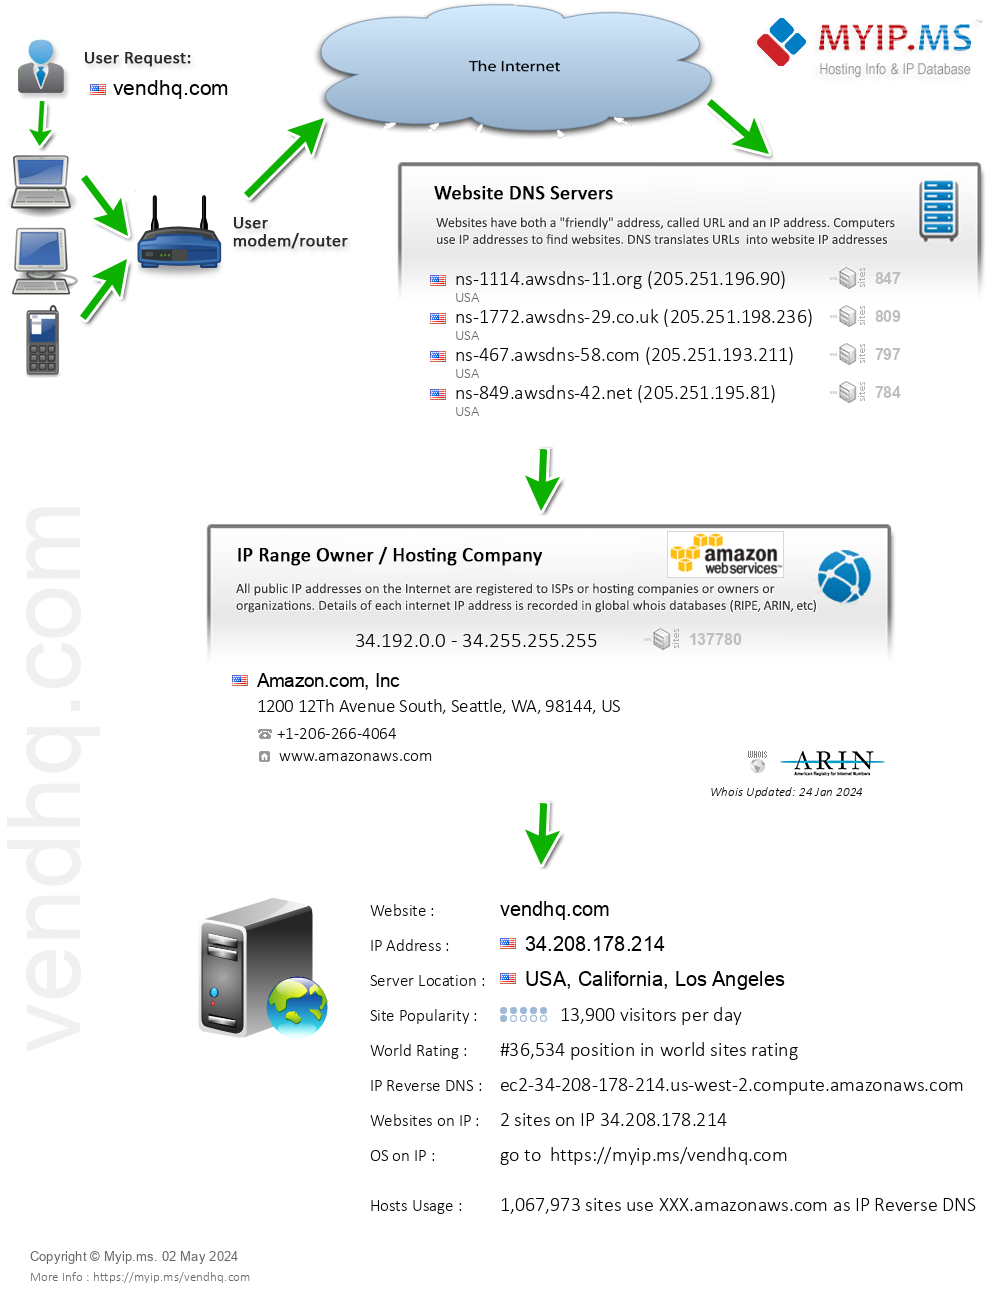 Vendhq.com - Website Hosting Visual IP Diagram